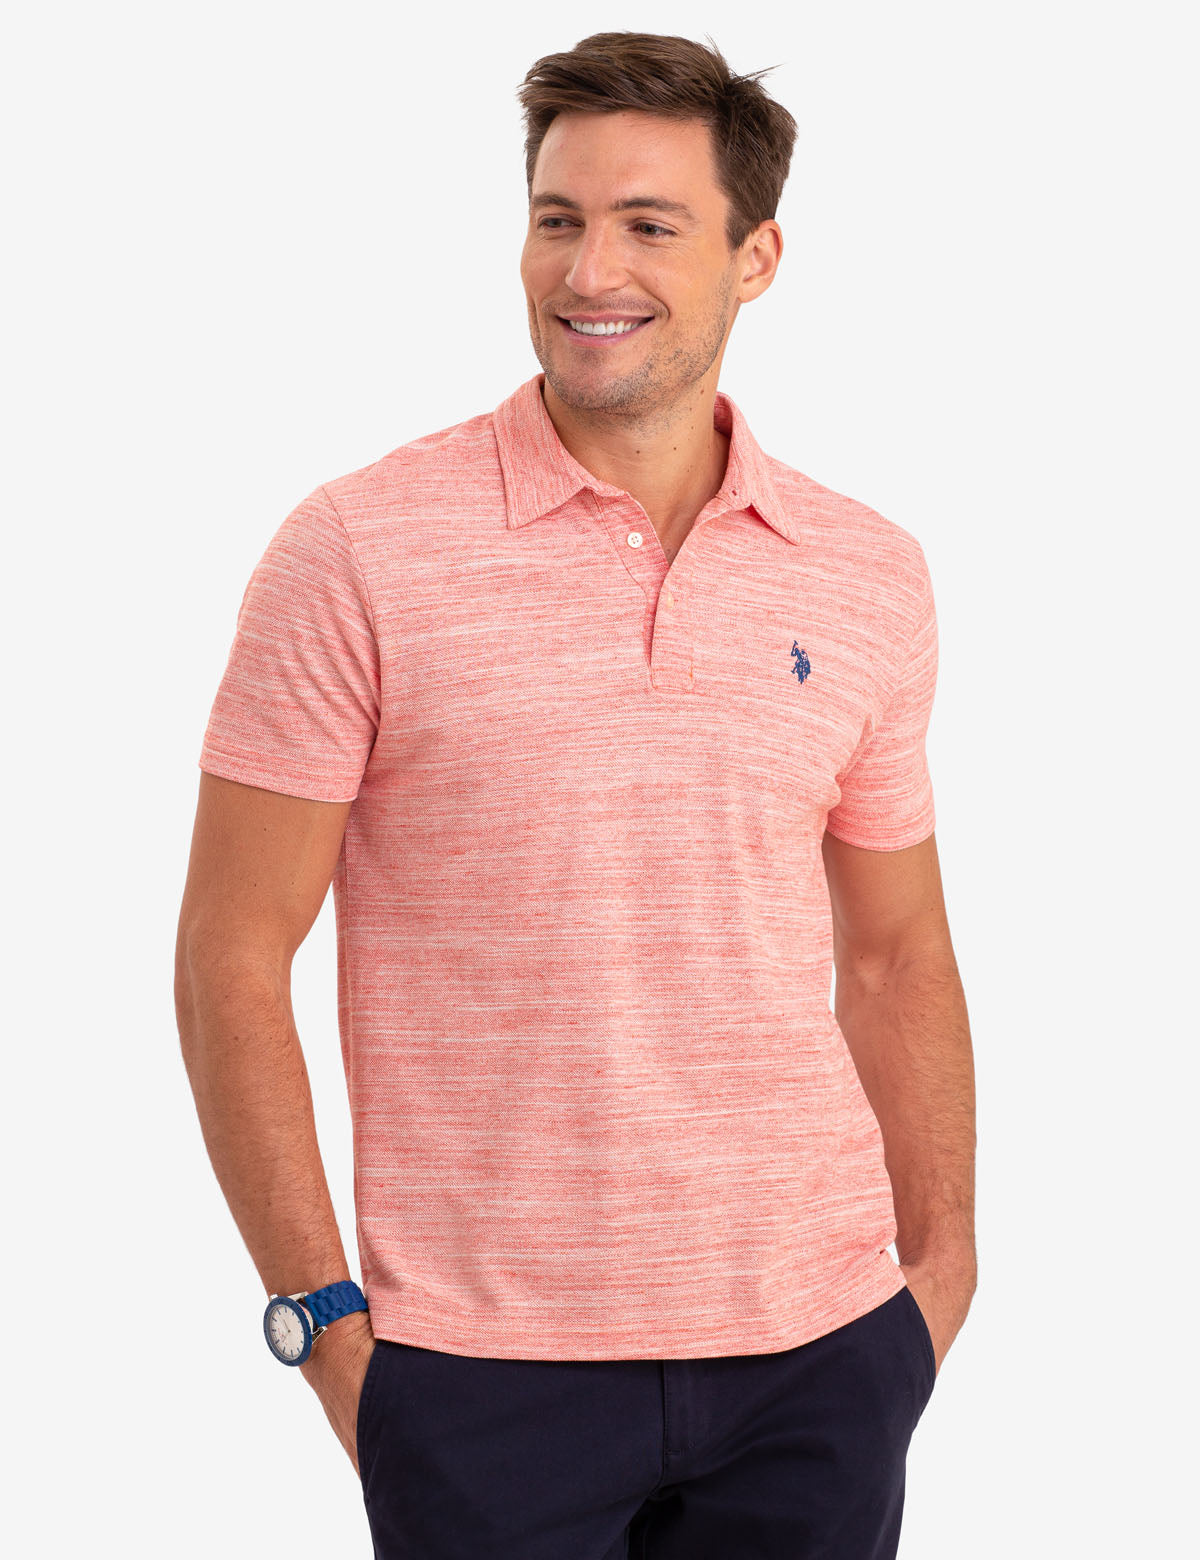 Louis Vuitton Tie Dye Polo Shirt - USALast